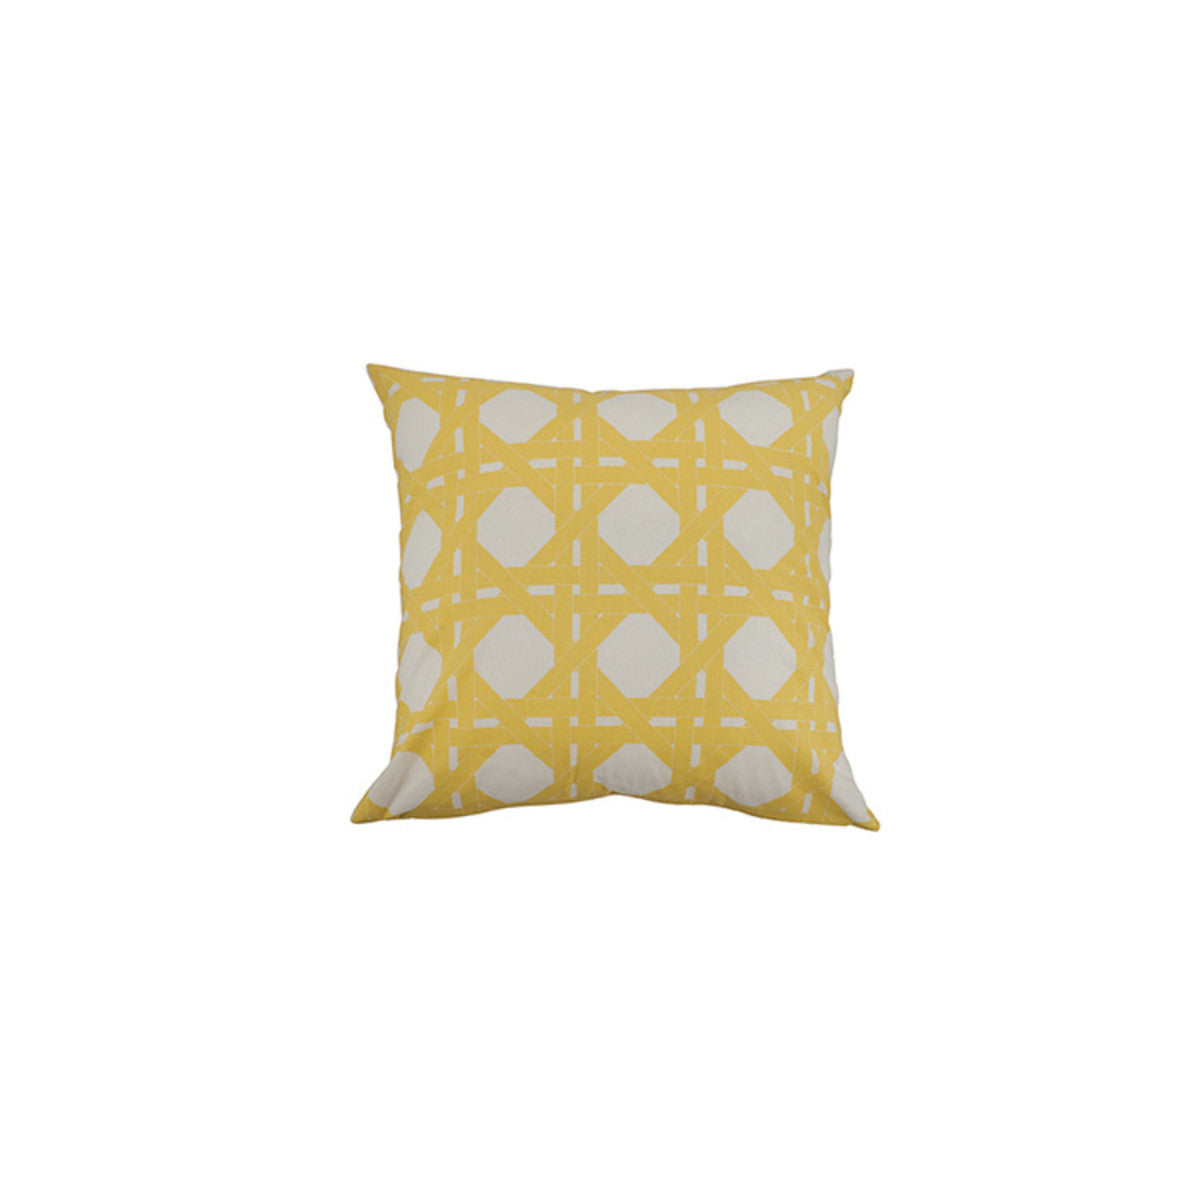 Jessica Cane 18" Pillow Cover  Set of 4  Park Designs